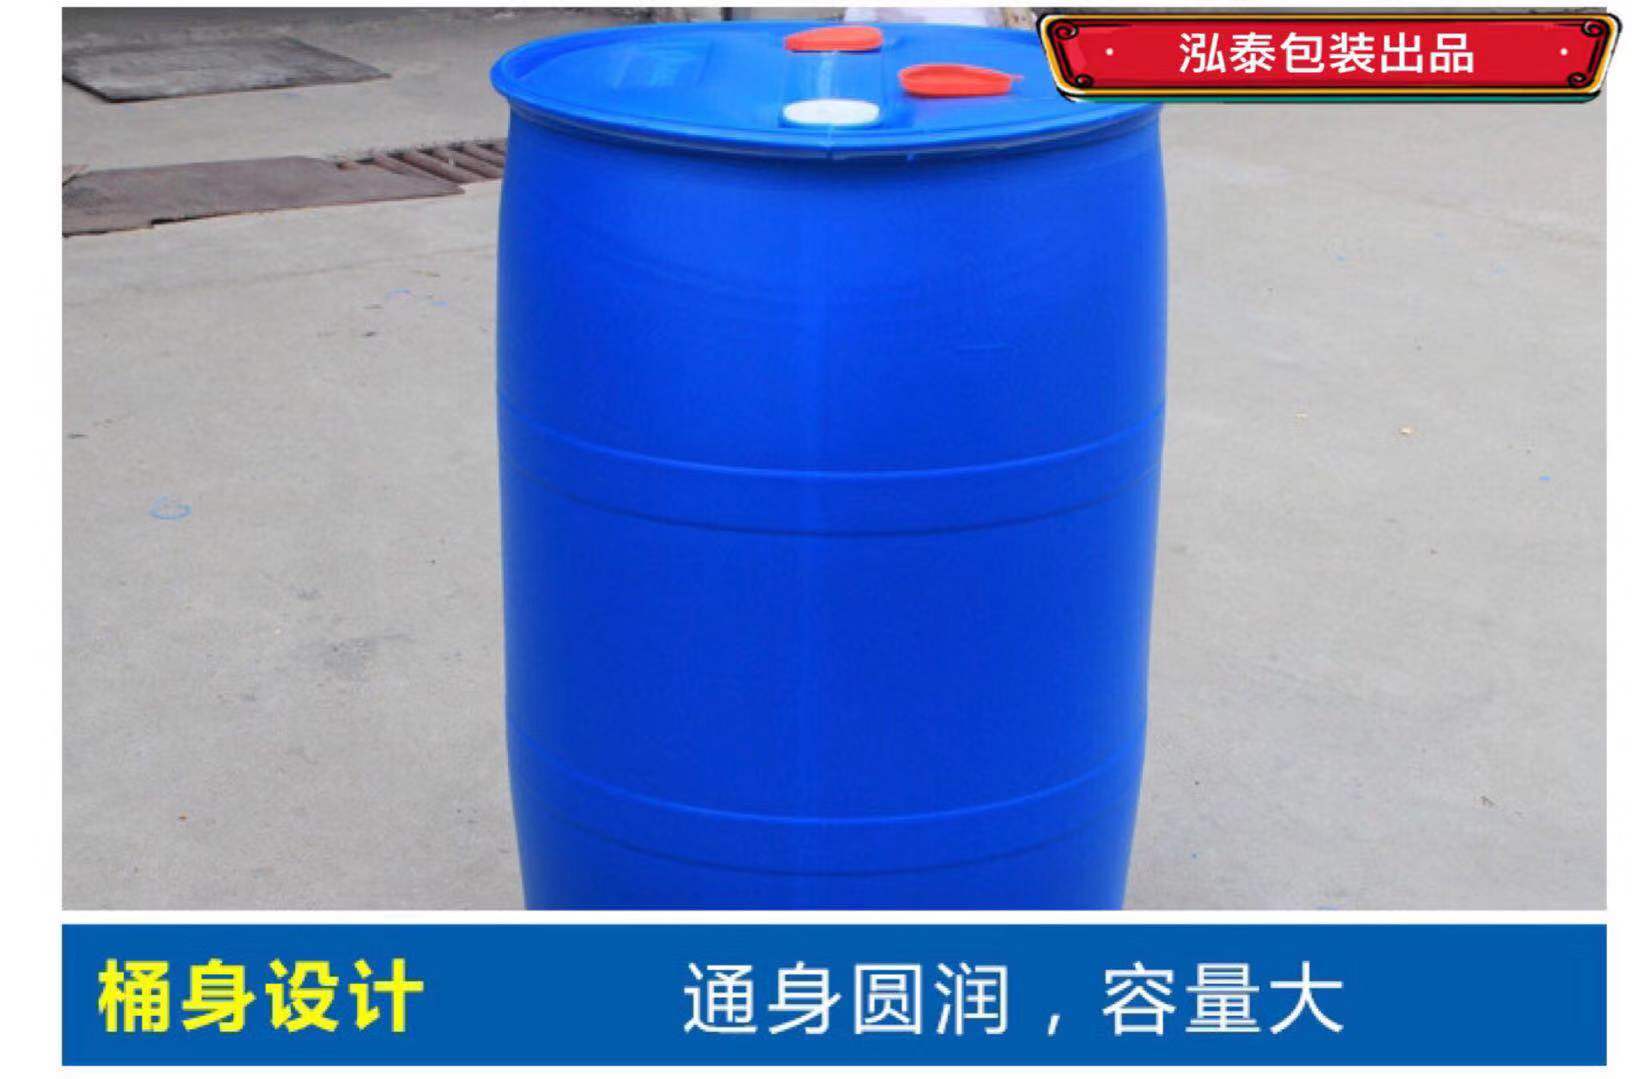 200升塑料桶 塑料桶生产厂家永固桶业二十年专业品质